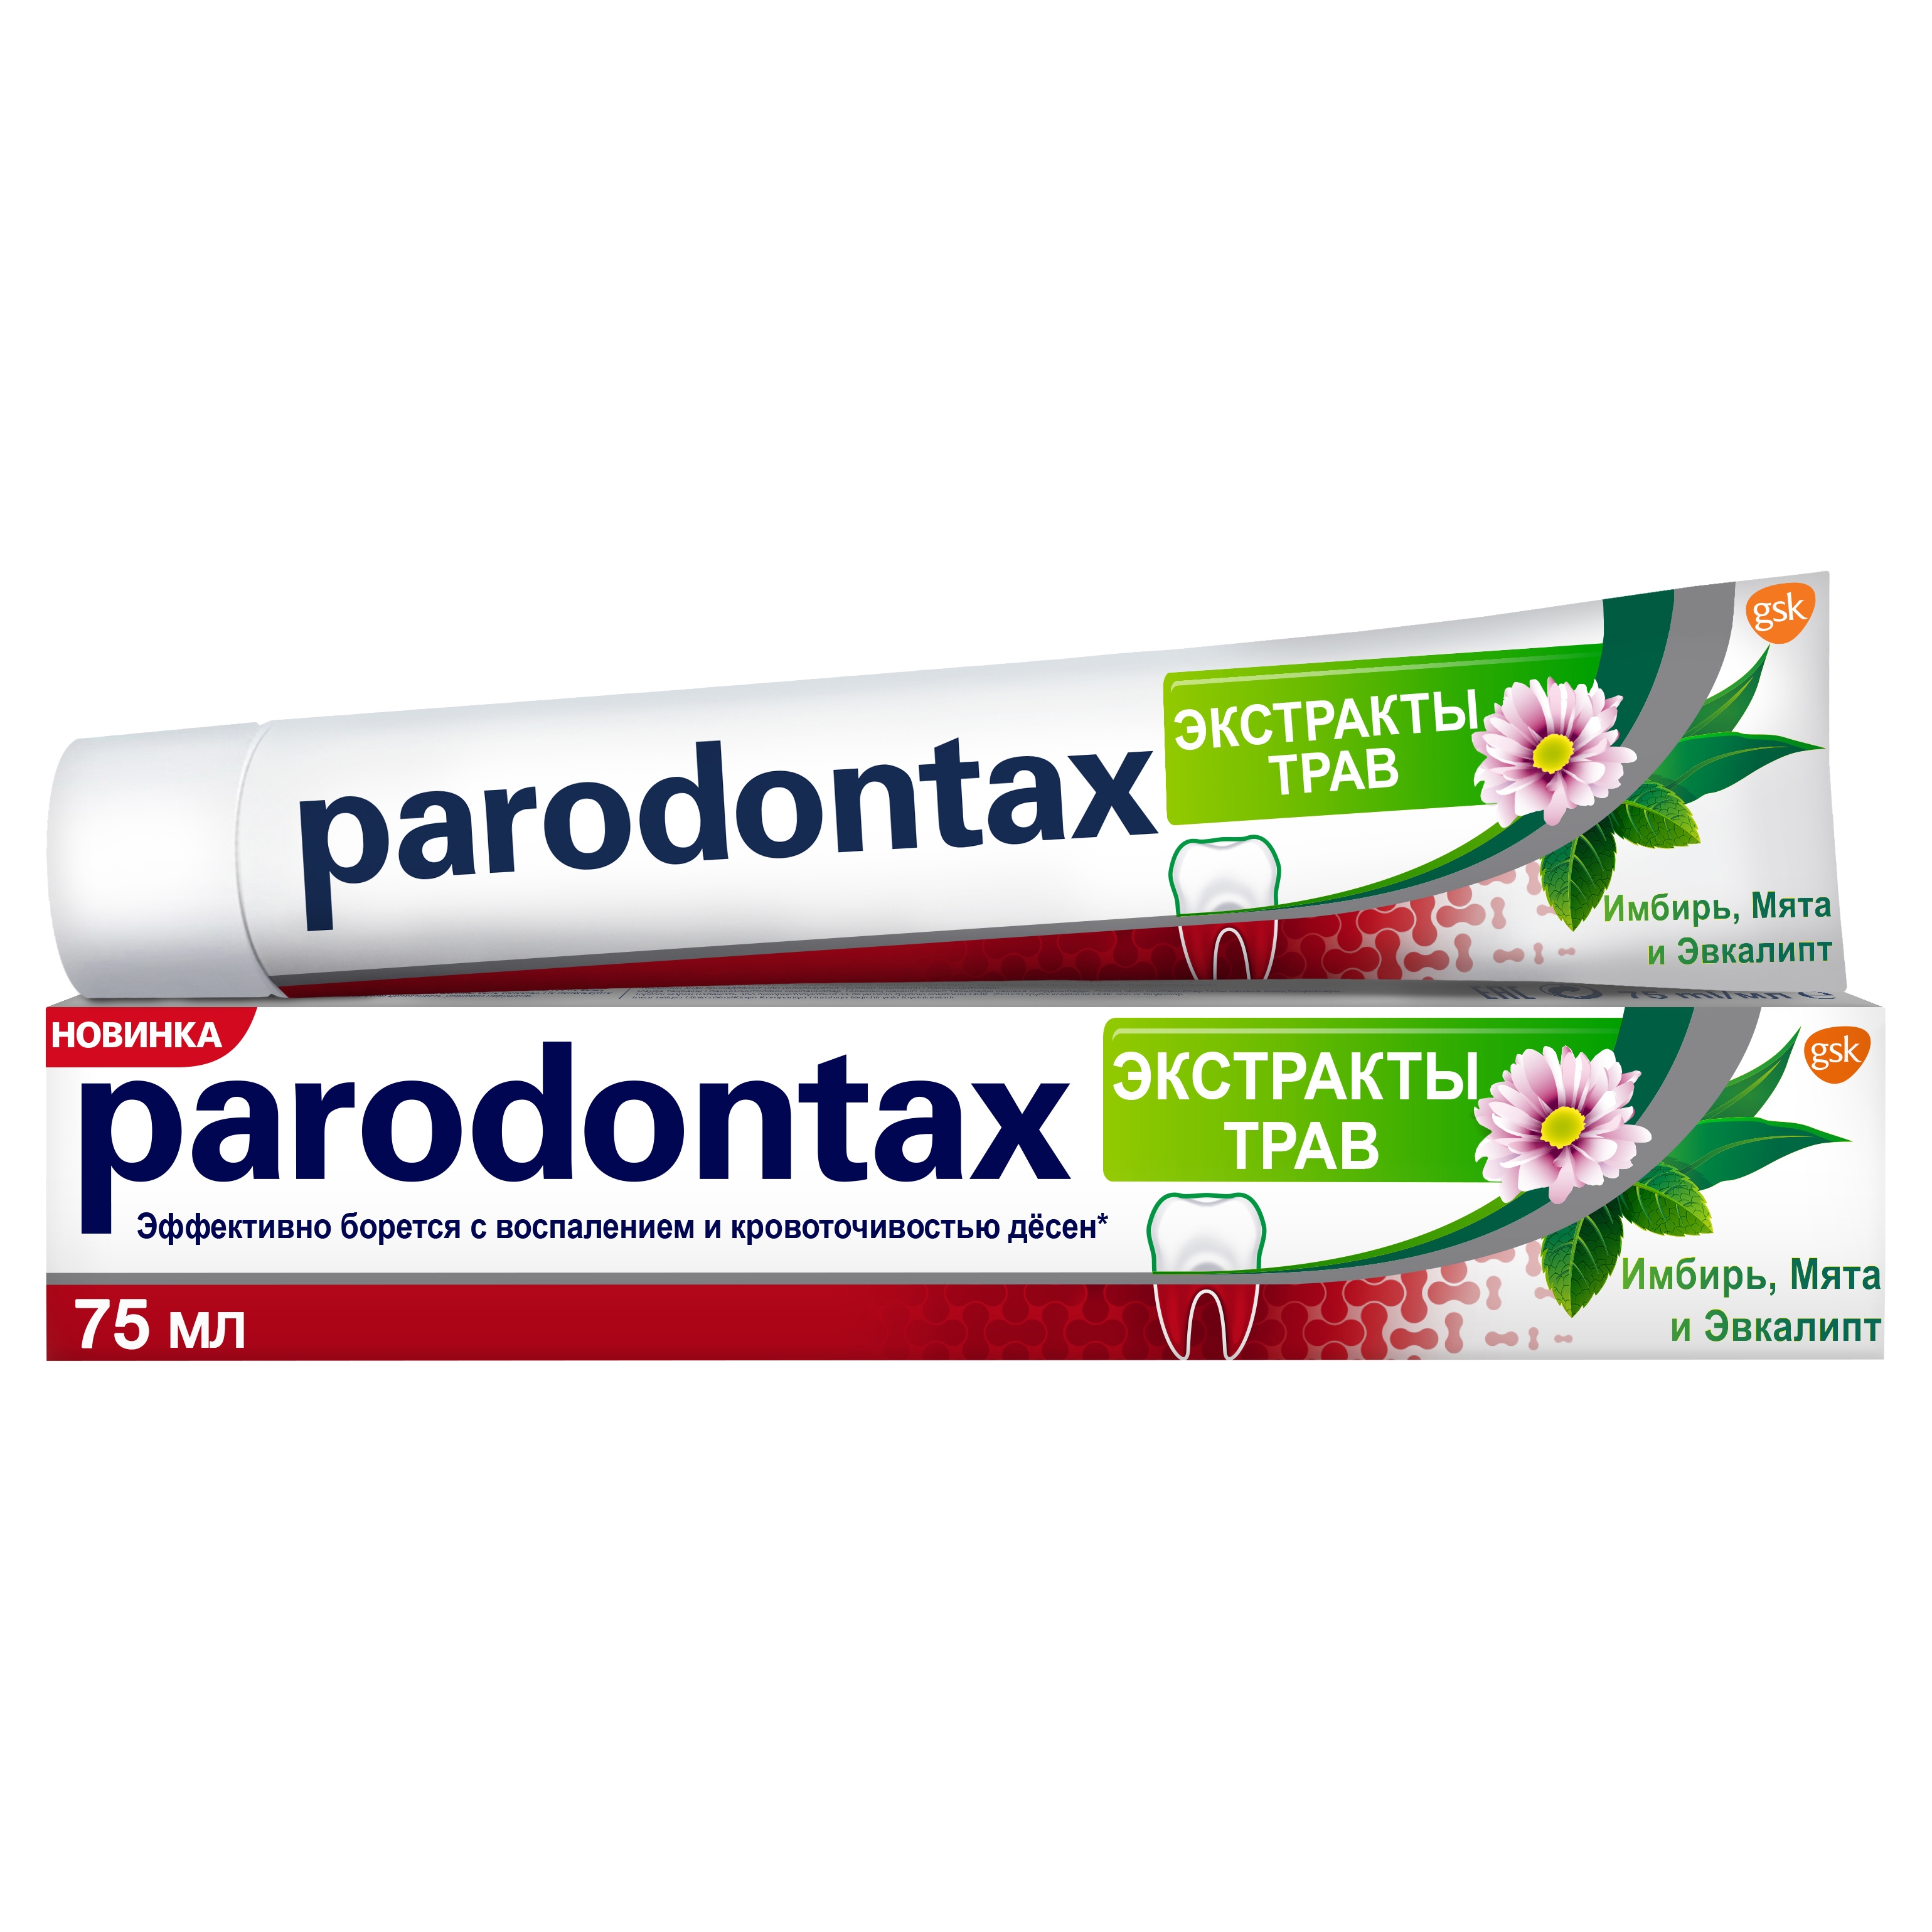 Зубная паста Parodontax Экстракты Трав 75 мл смольный институт дневники воспитанниц